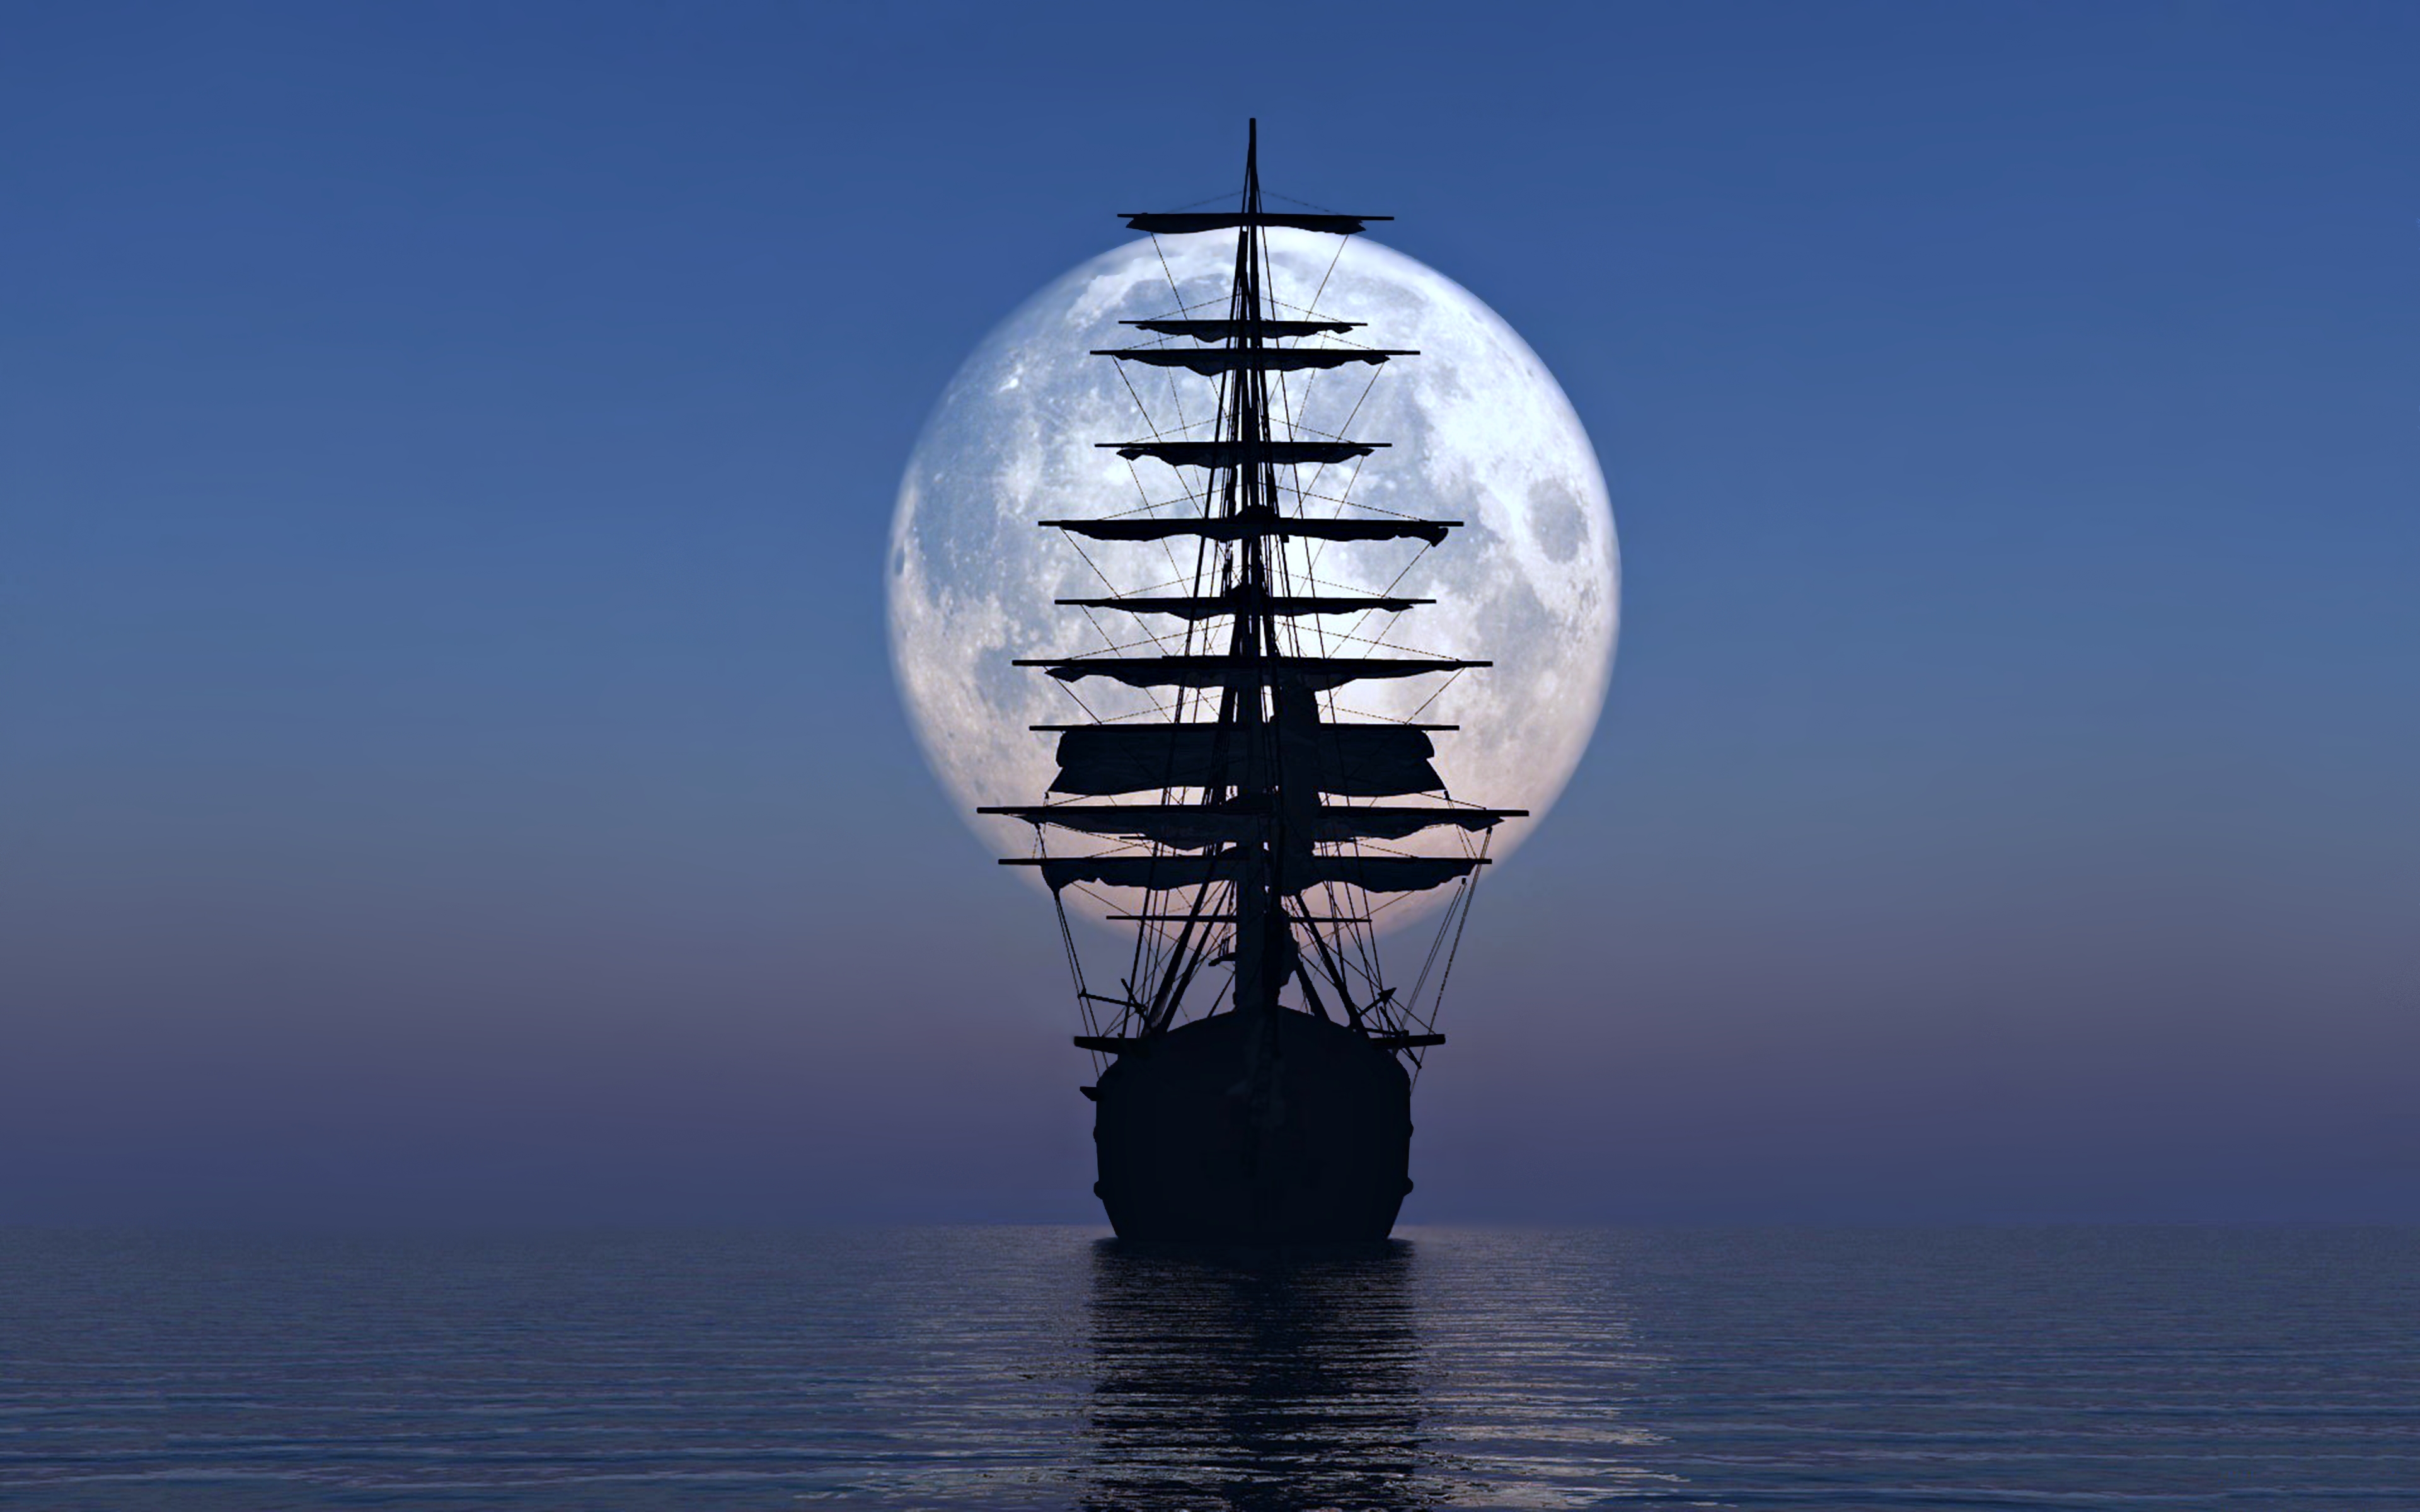 sea, sailing ship, sailboat, ship, vehicles, moon, ocean